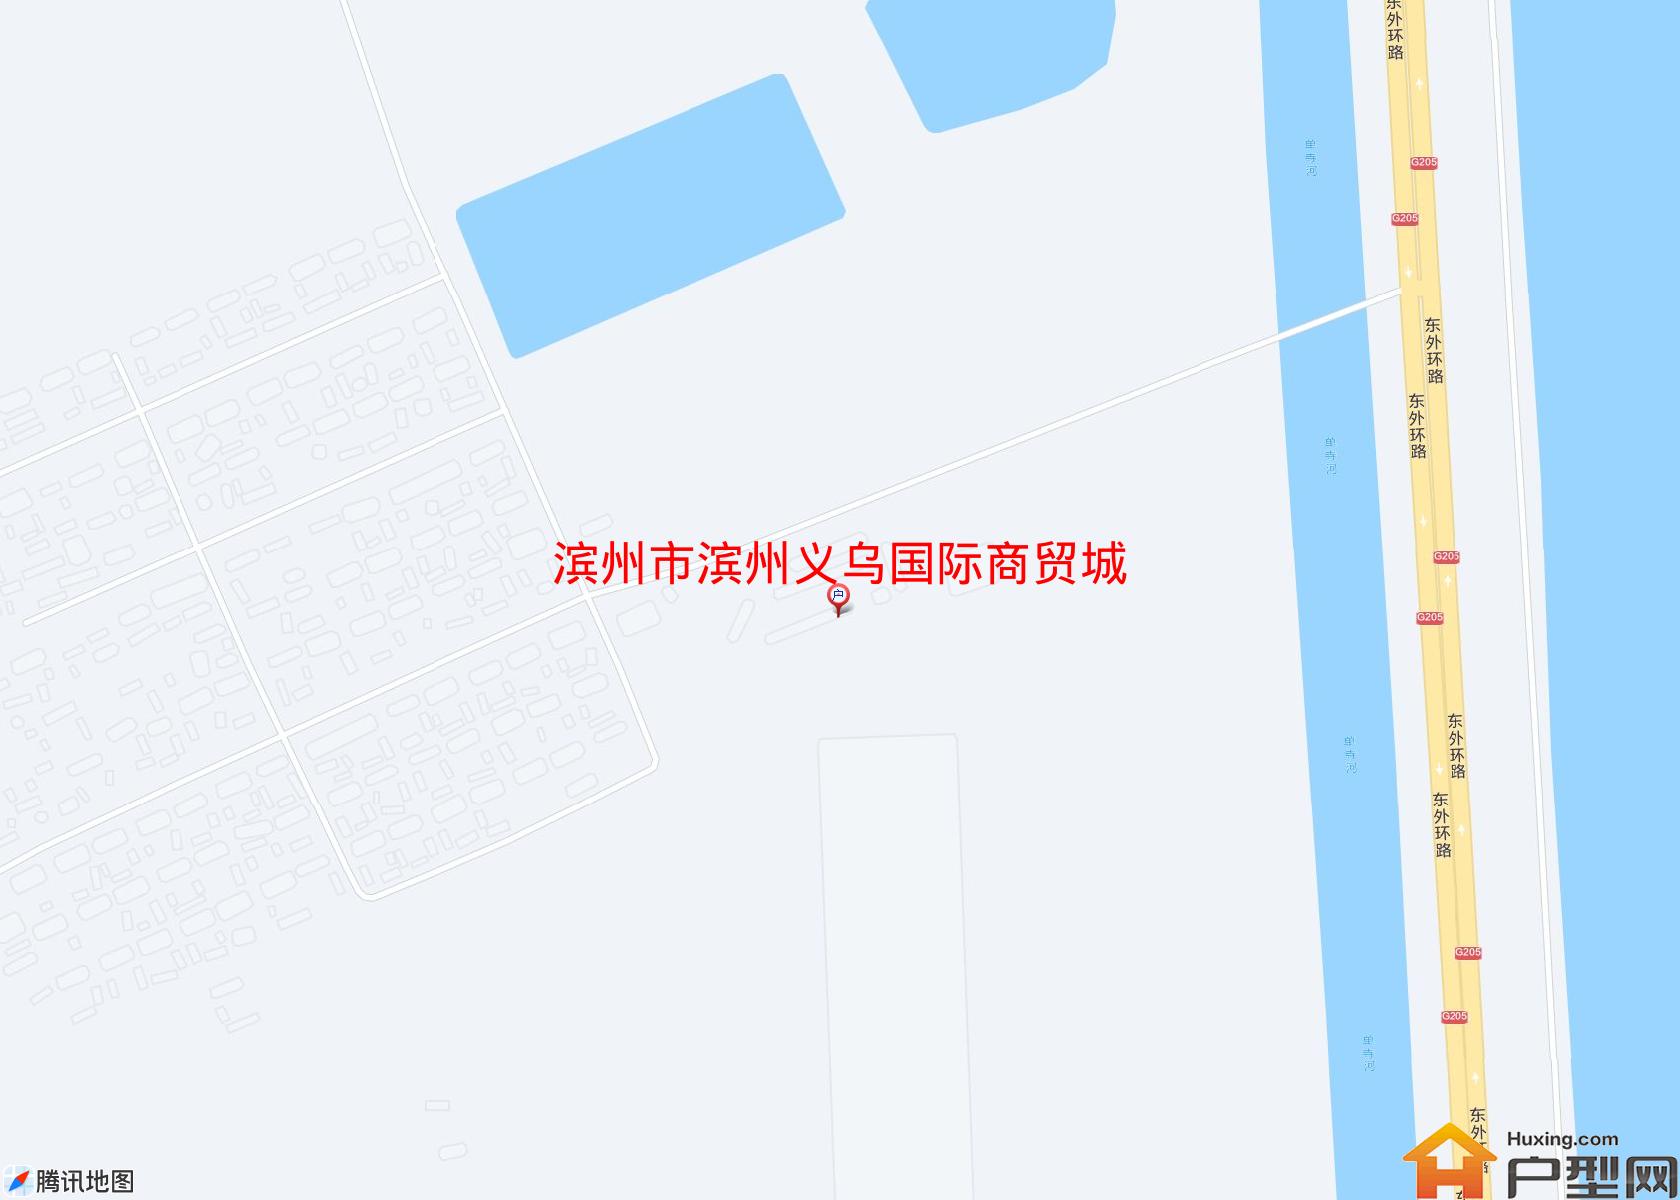 滨州义乌国际商贸城小区 - 户型网